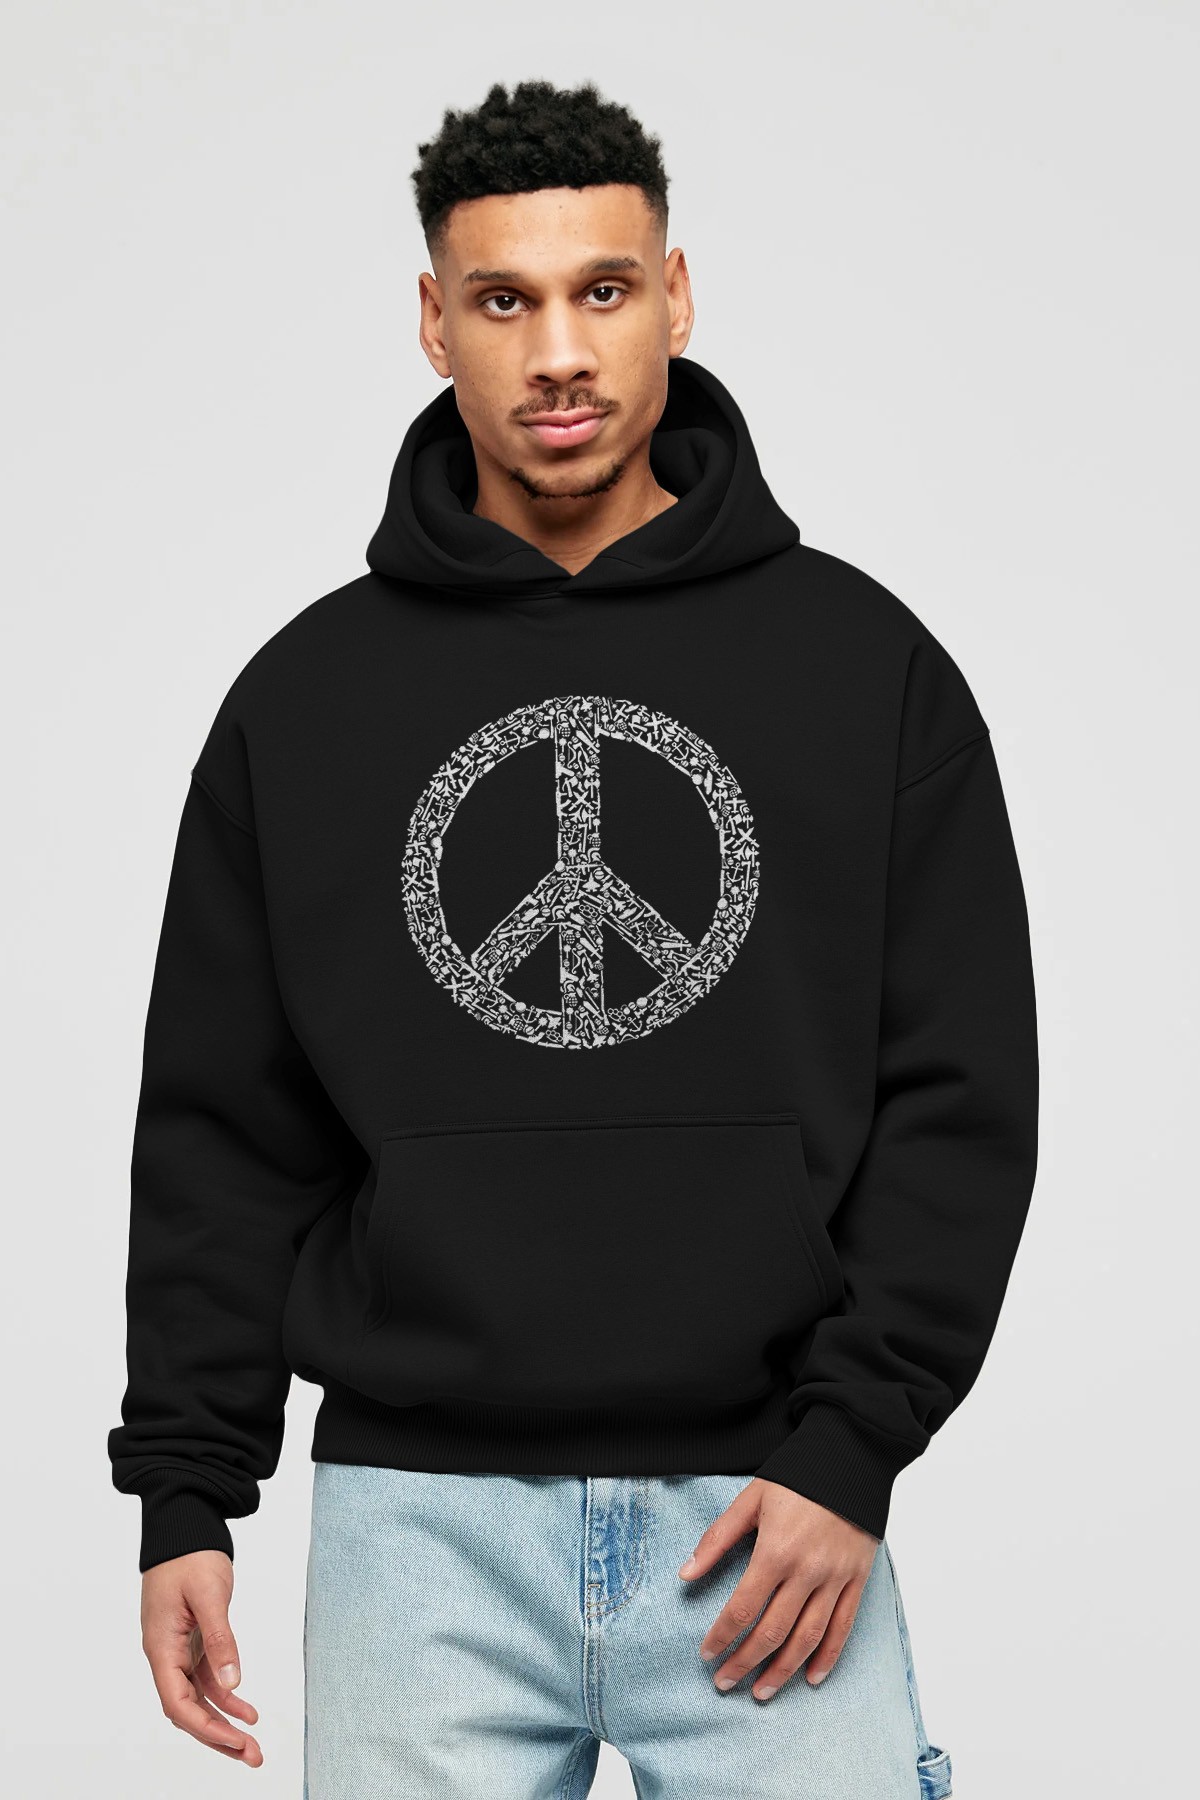 War Peace Ön Baskılı Hoodie Oversize Kapüşonlu Sweatshirt Erkek Kadın Unisex